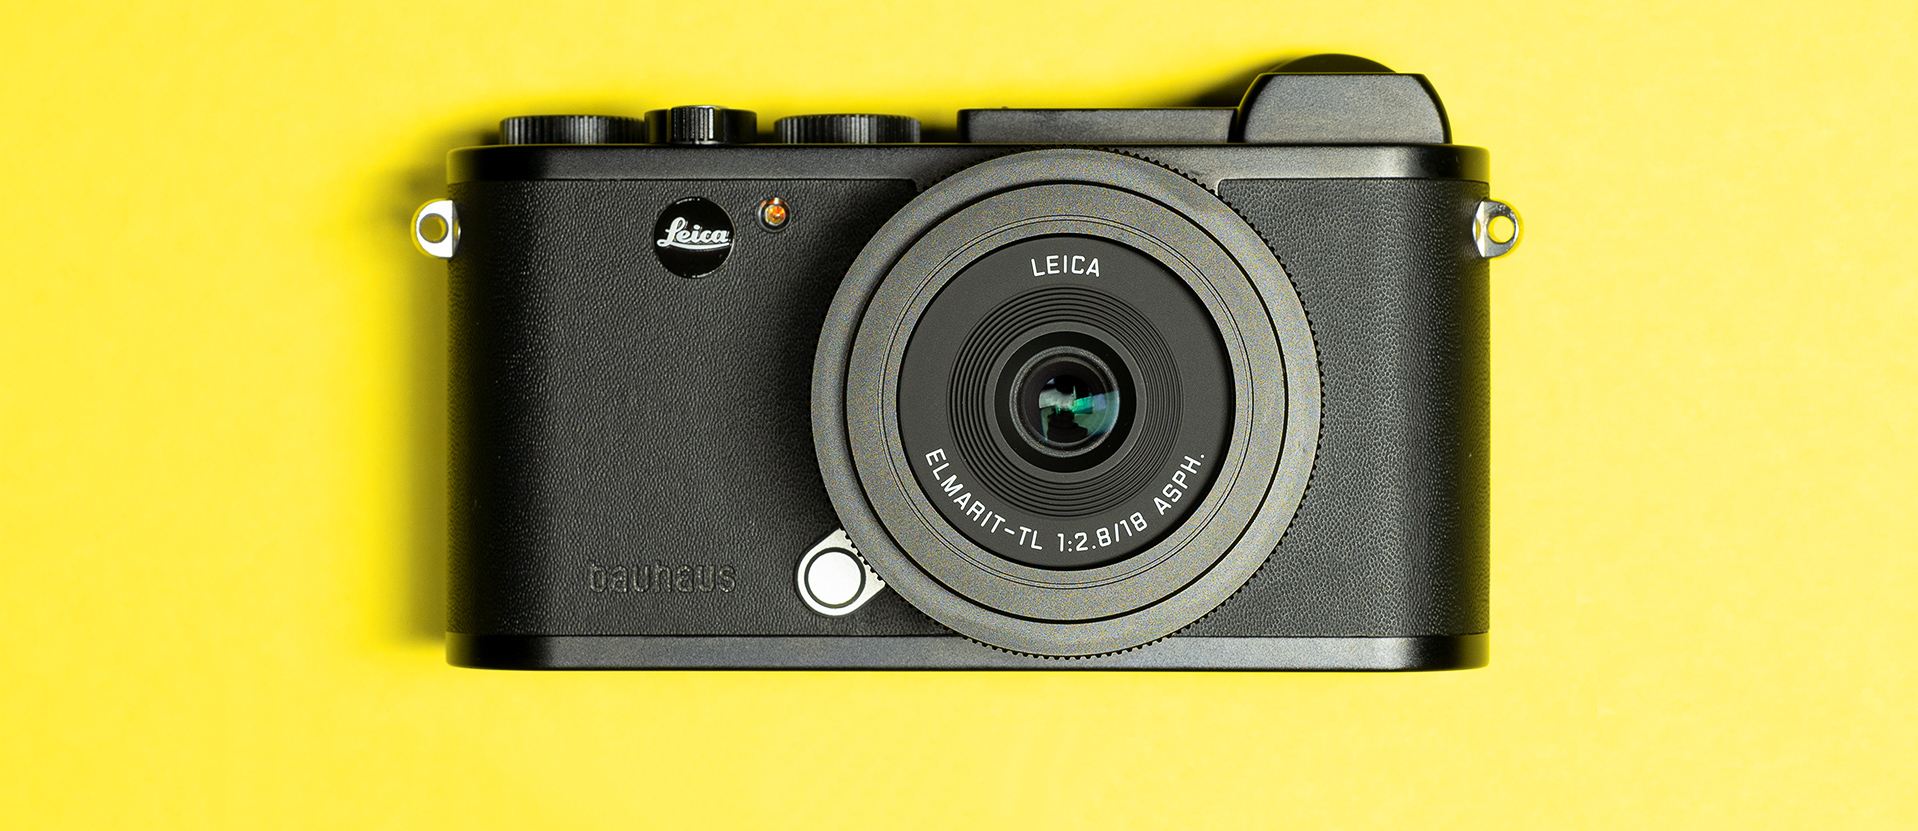 Stoffig slang weten Leica CL '100 jahre bauhaus - bauhaus museum dessau' Limited Edition | Red  Dot Forum